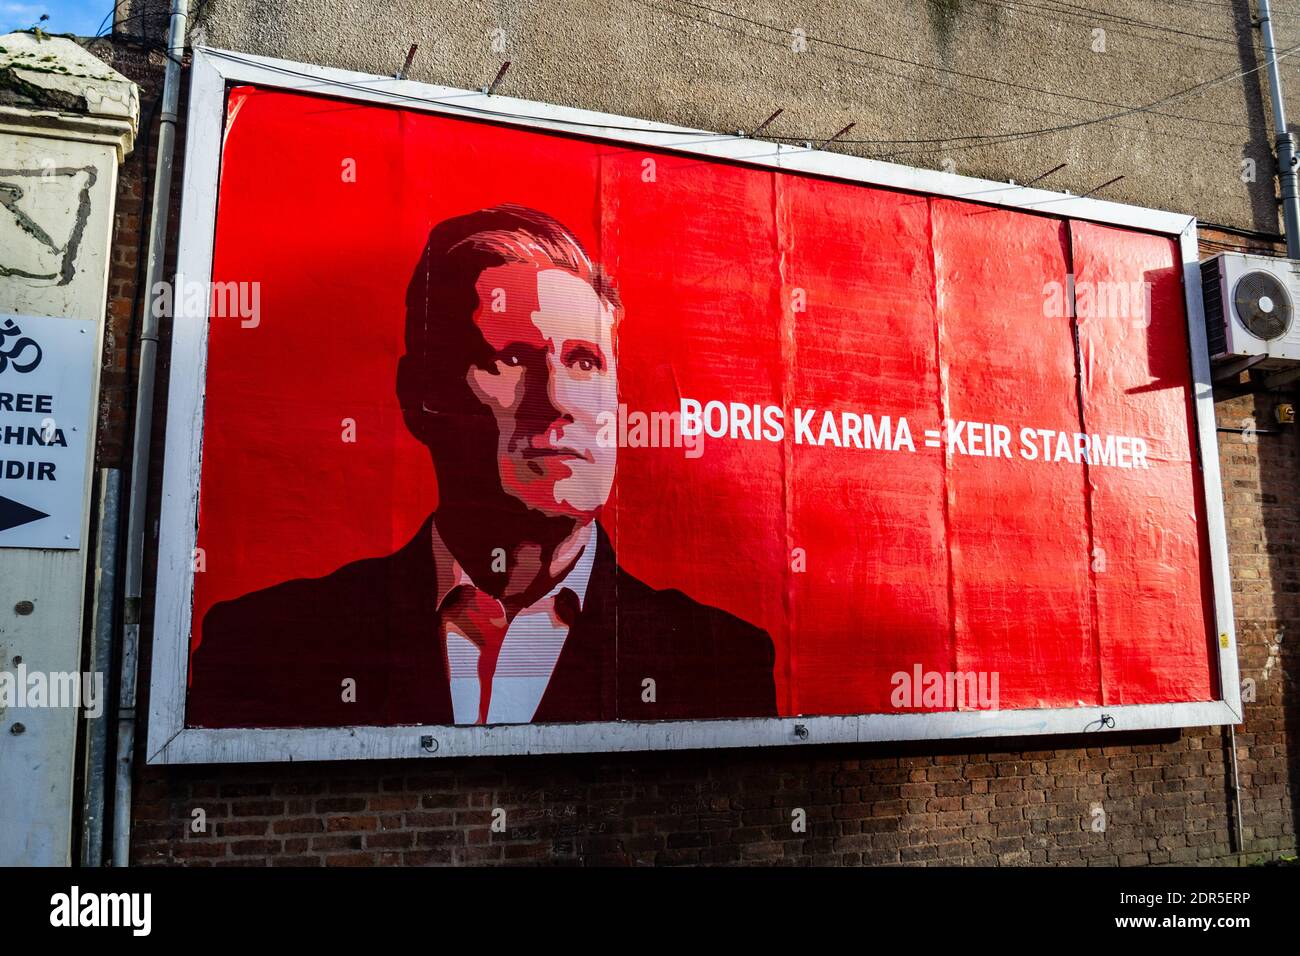 Boris Karma = Keir Starmer - panneau d'affichage politique avec Keir Starmer contre Boris Johnson Banque D'Images